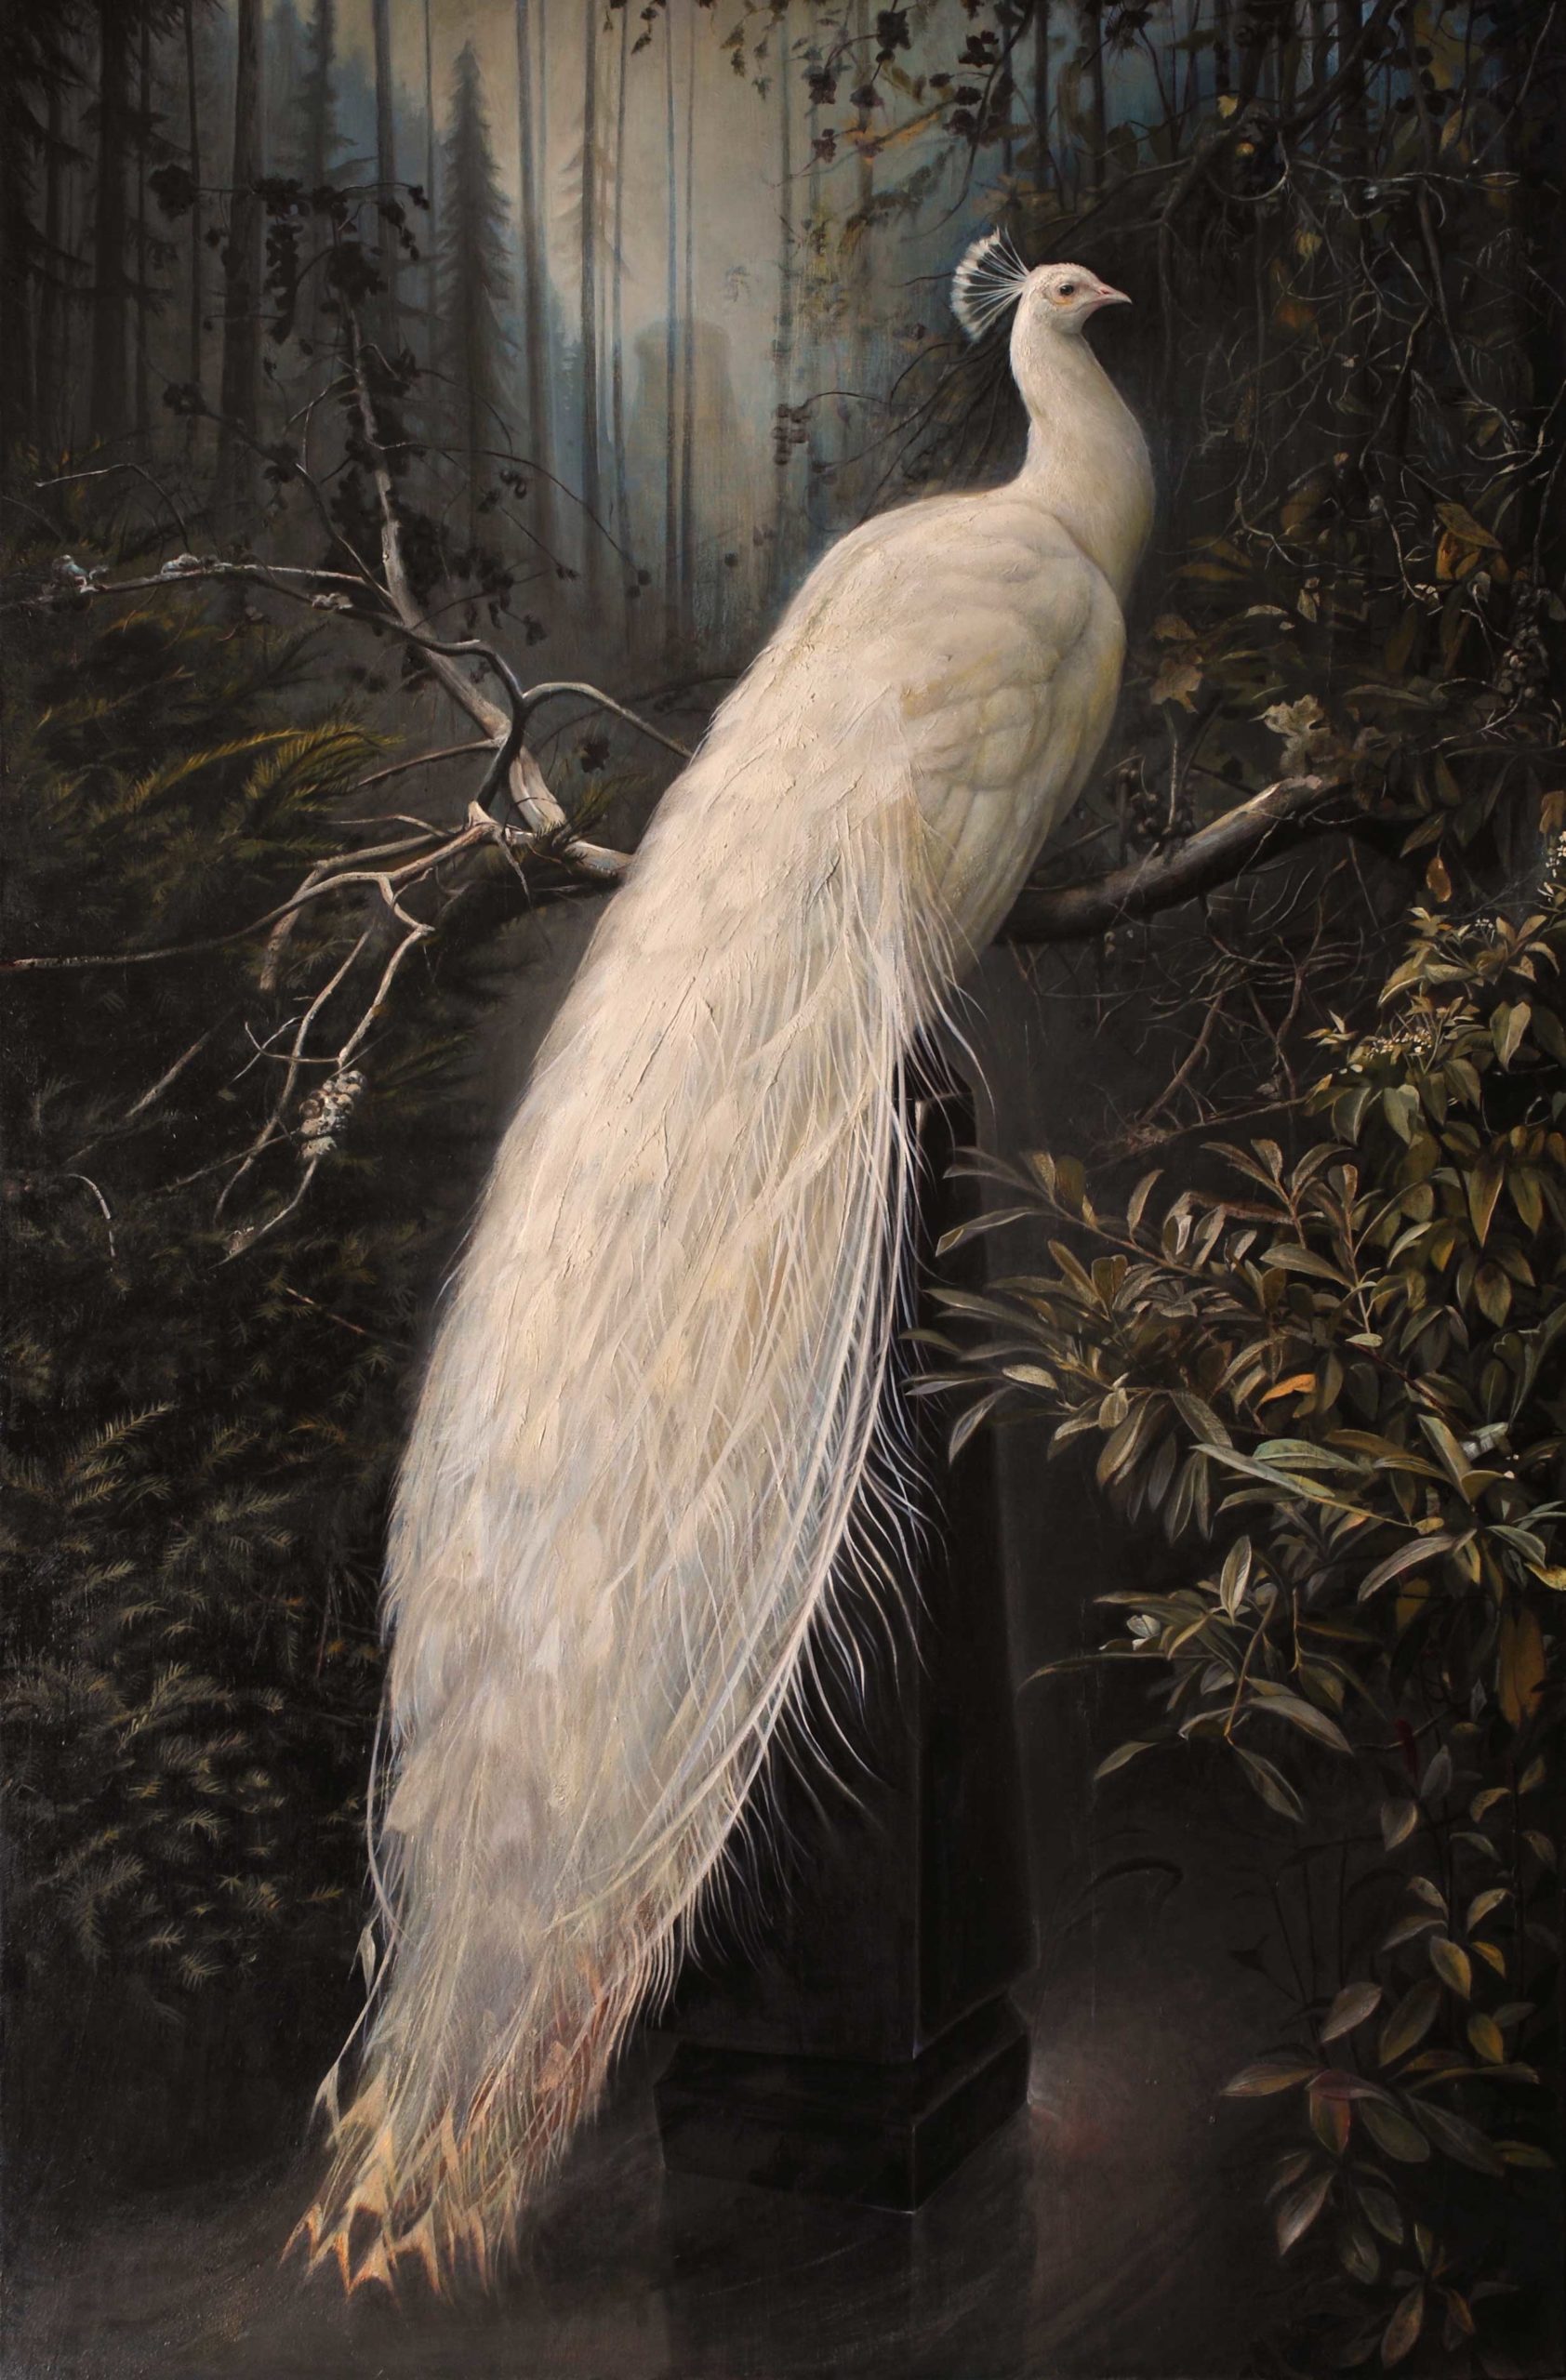 Contemporary realism paintings - wildlife art